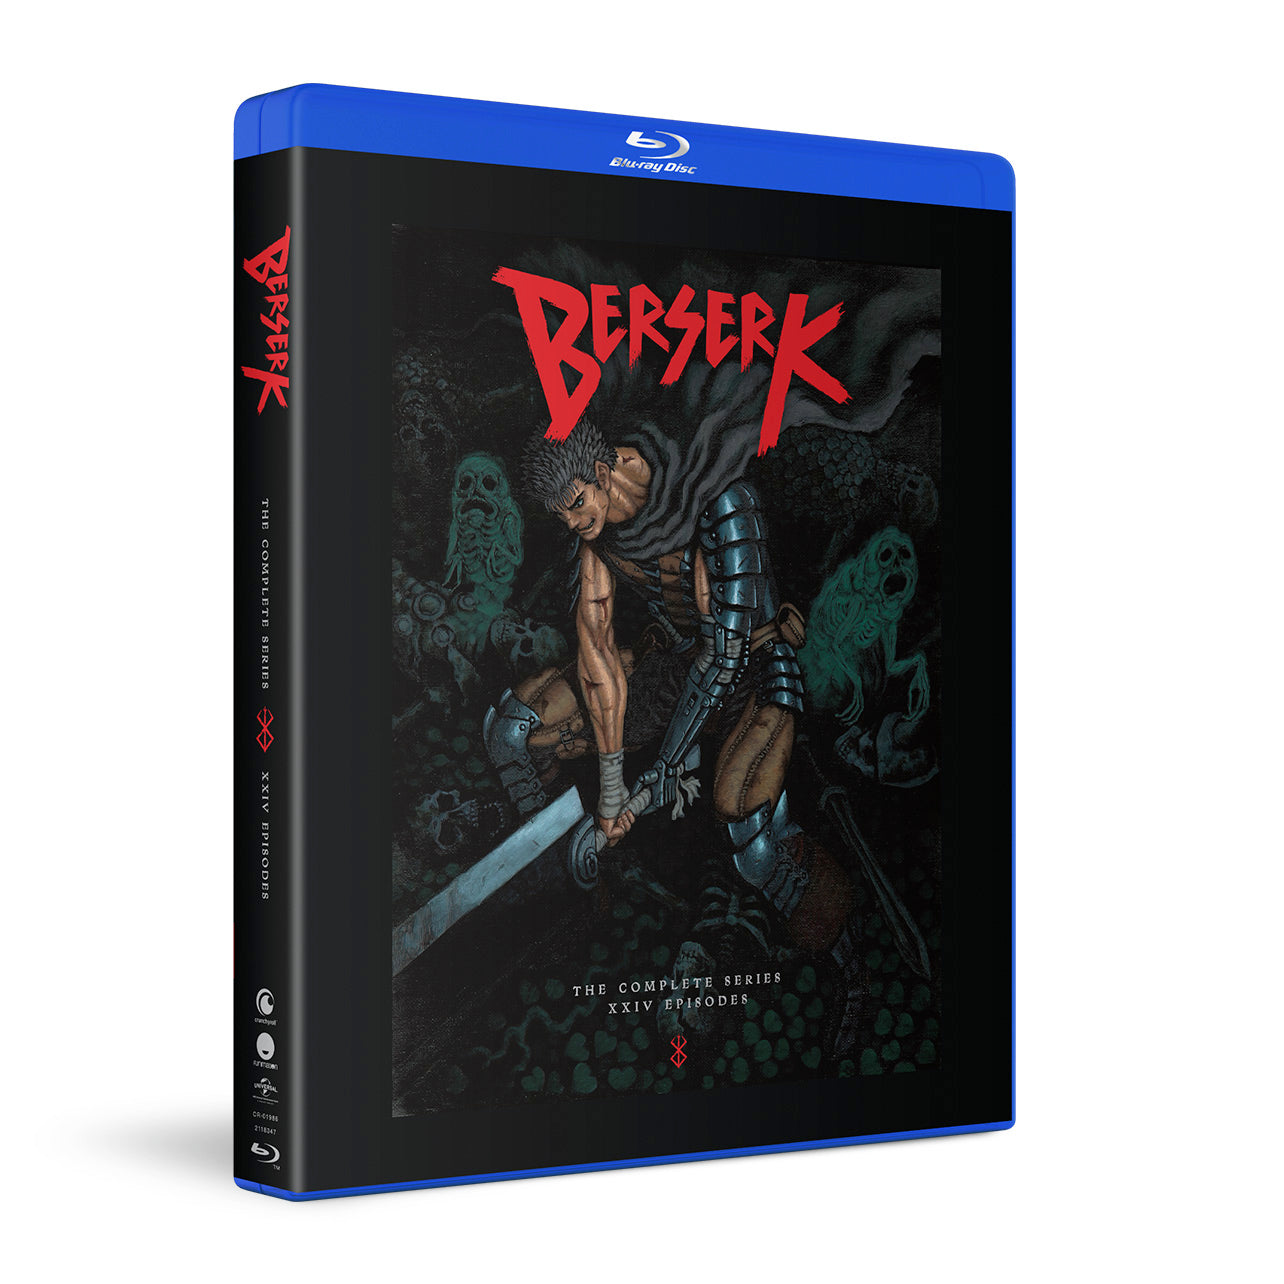 Berserk (2016) - The Complete Series - Blu-ray image count 1